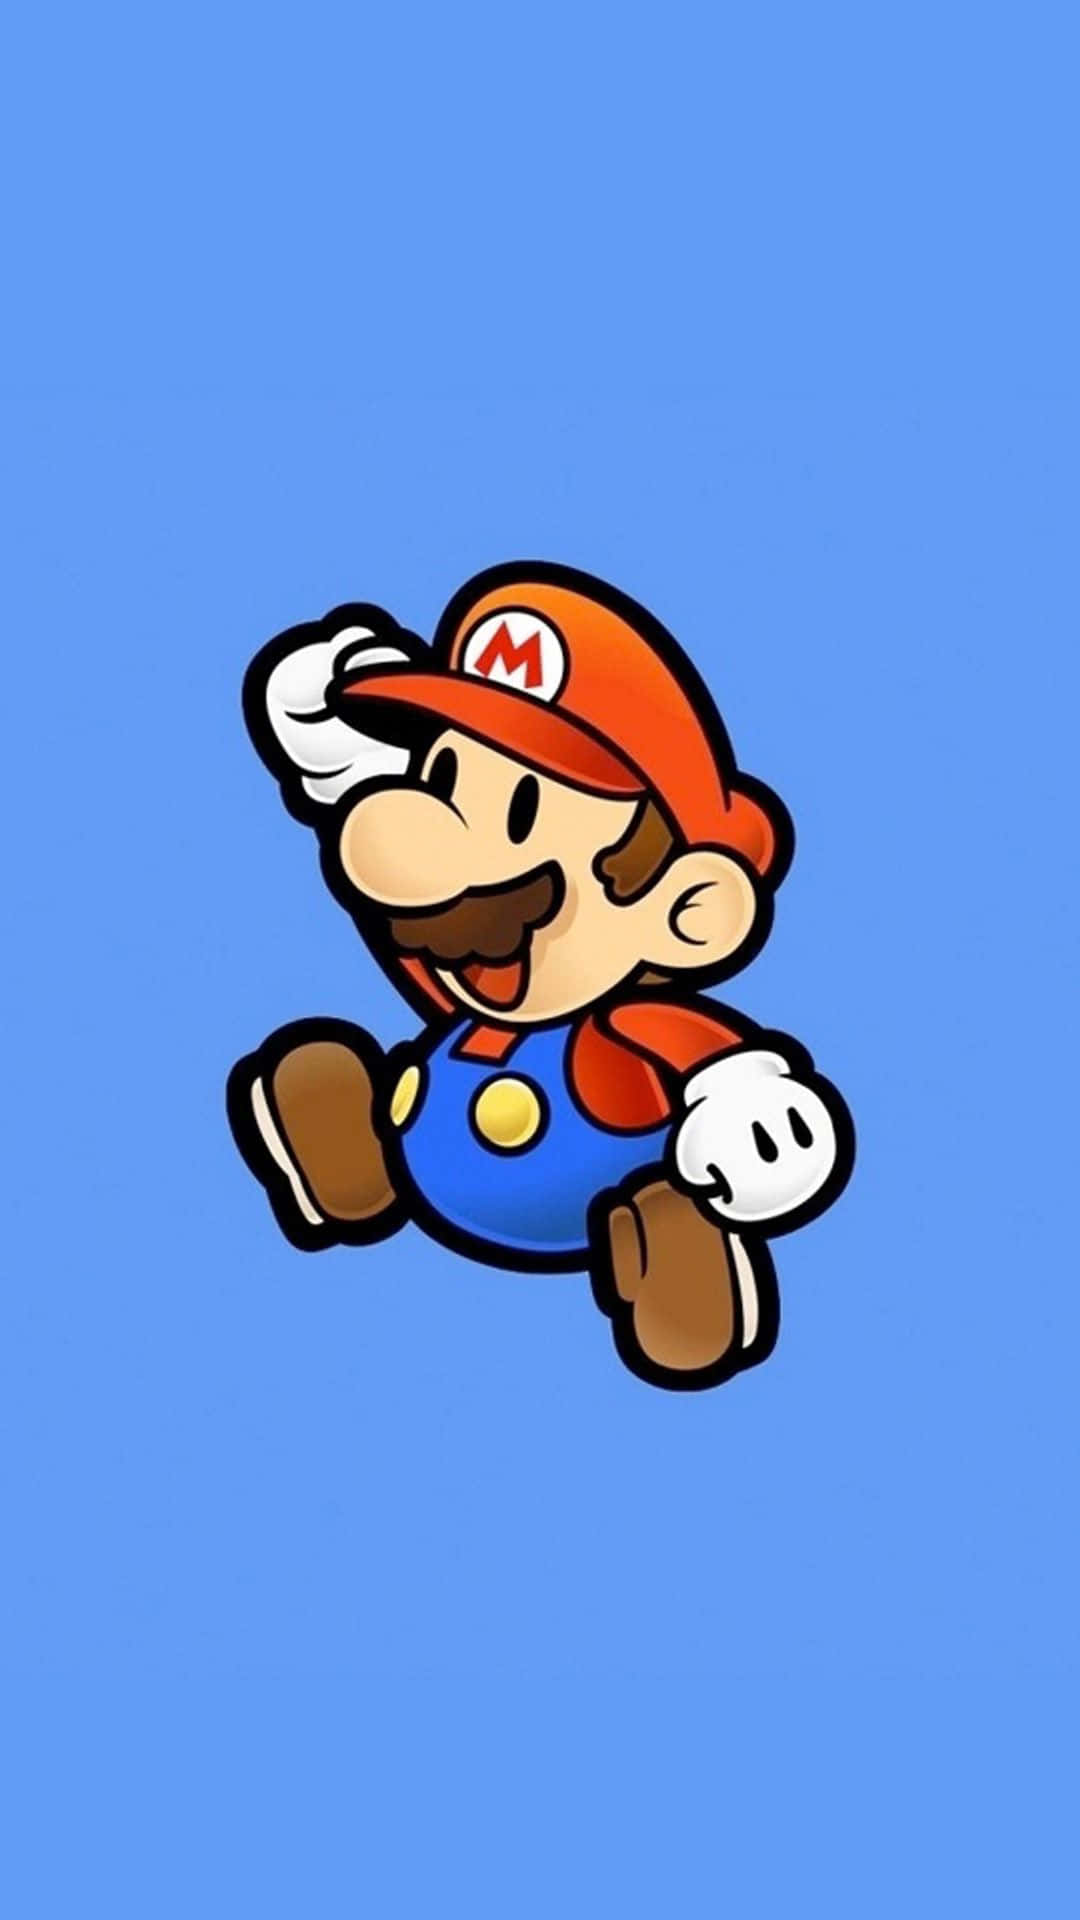 Ennintendo Mario-karaktär Springer På En Blå Bakgrund. Wallpaper